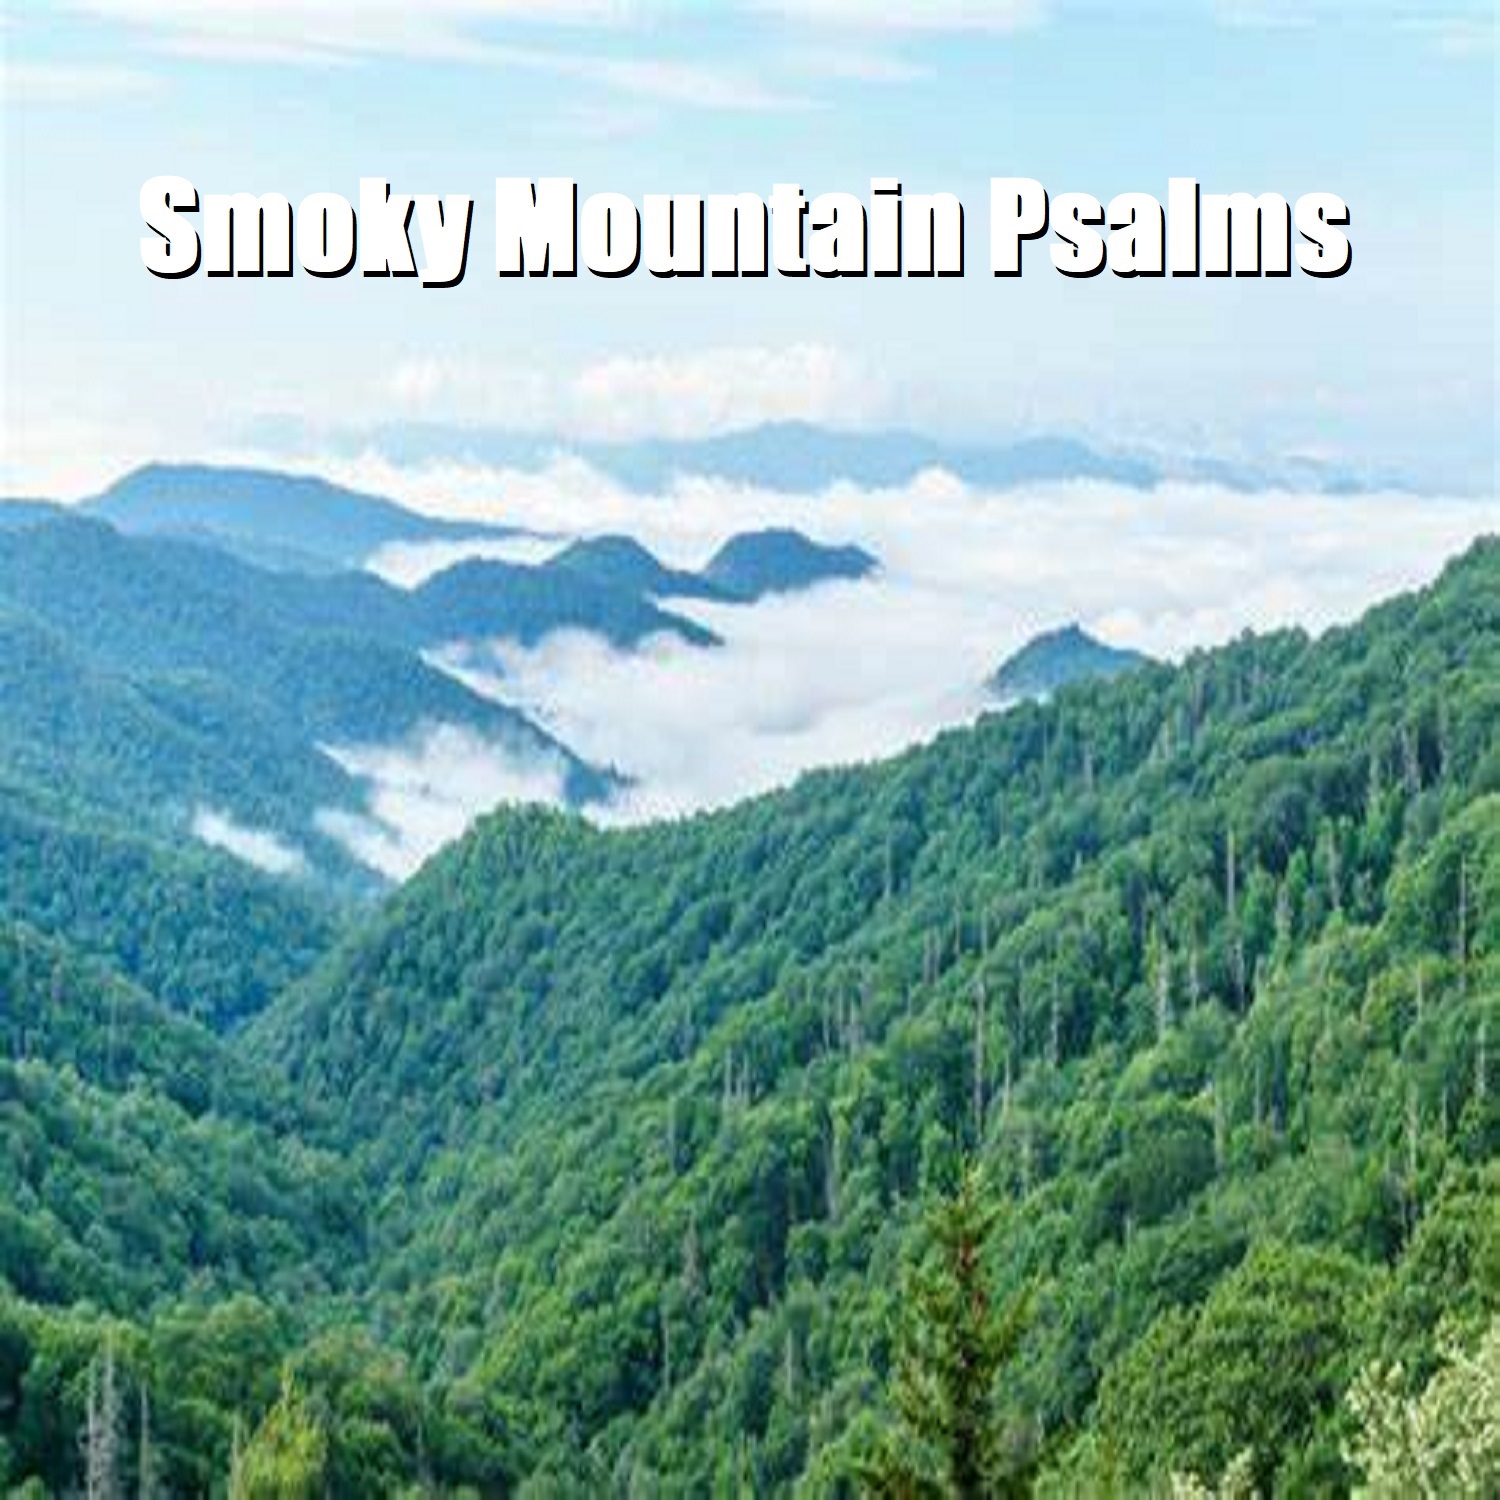 Smoky Mountain Psalms